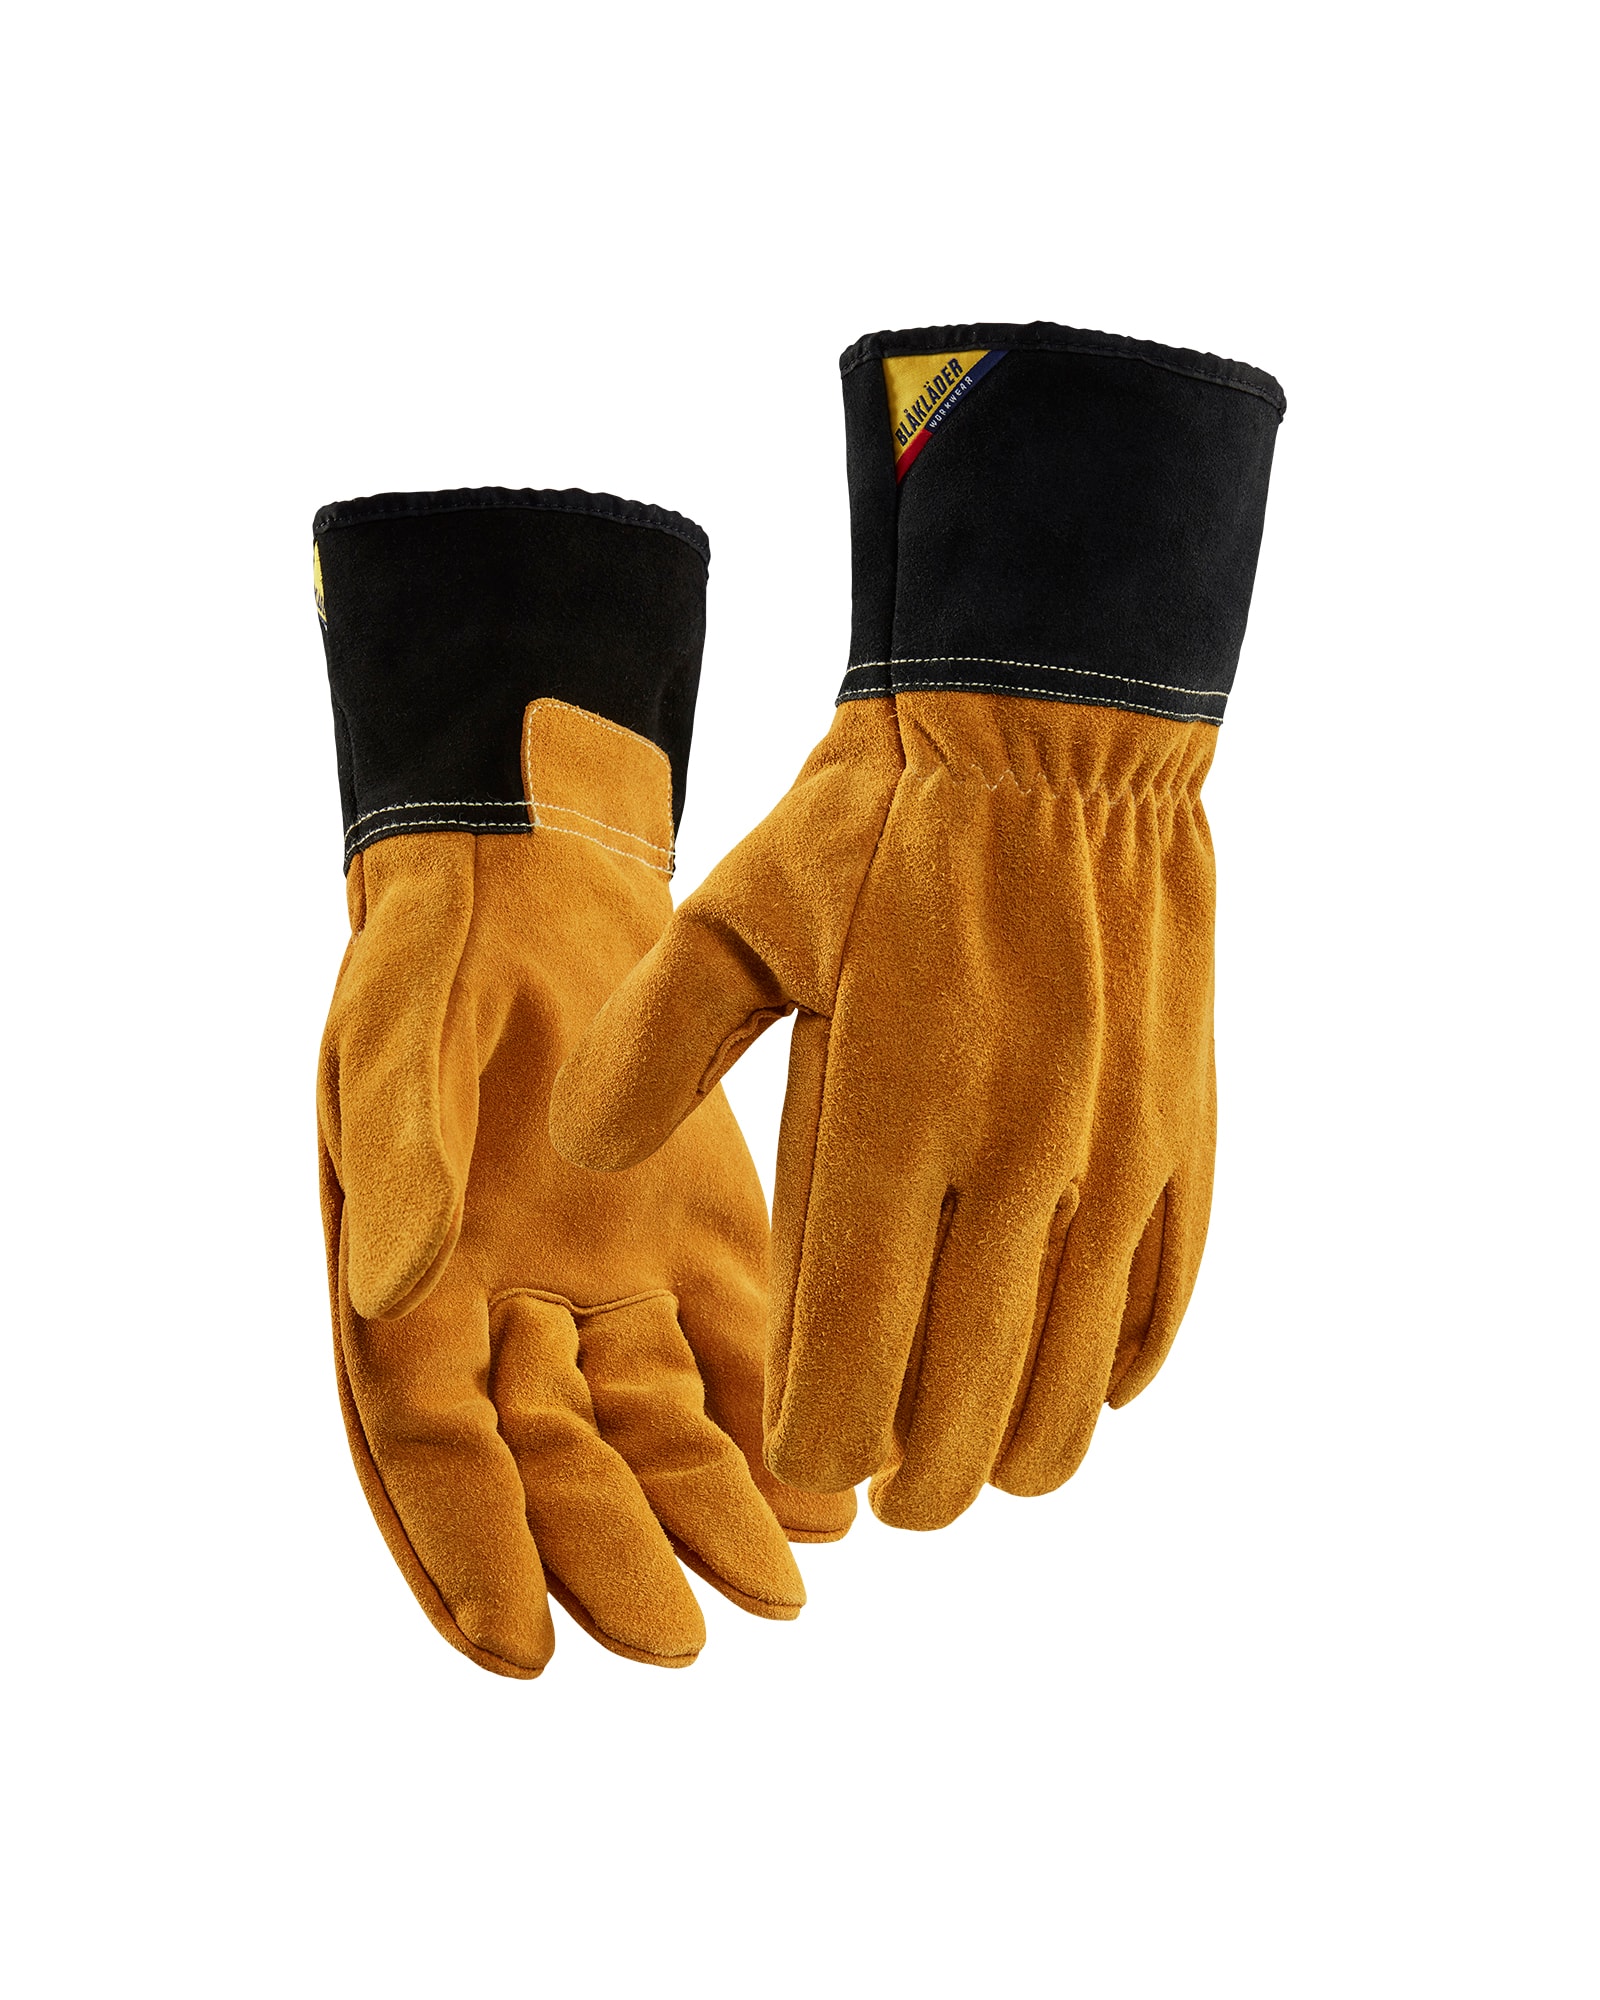 2840 1461 Blakläder Handschuh Hitzeschutz (Preis pro Paar, verkauf im Bündel mit 6 Paar)